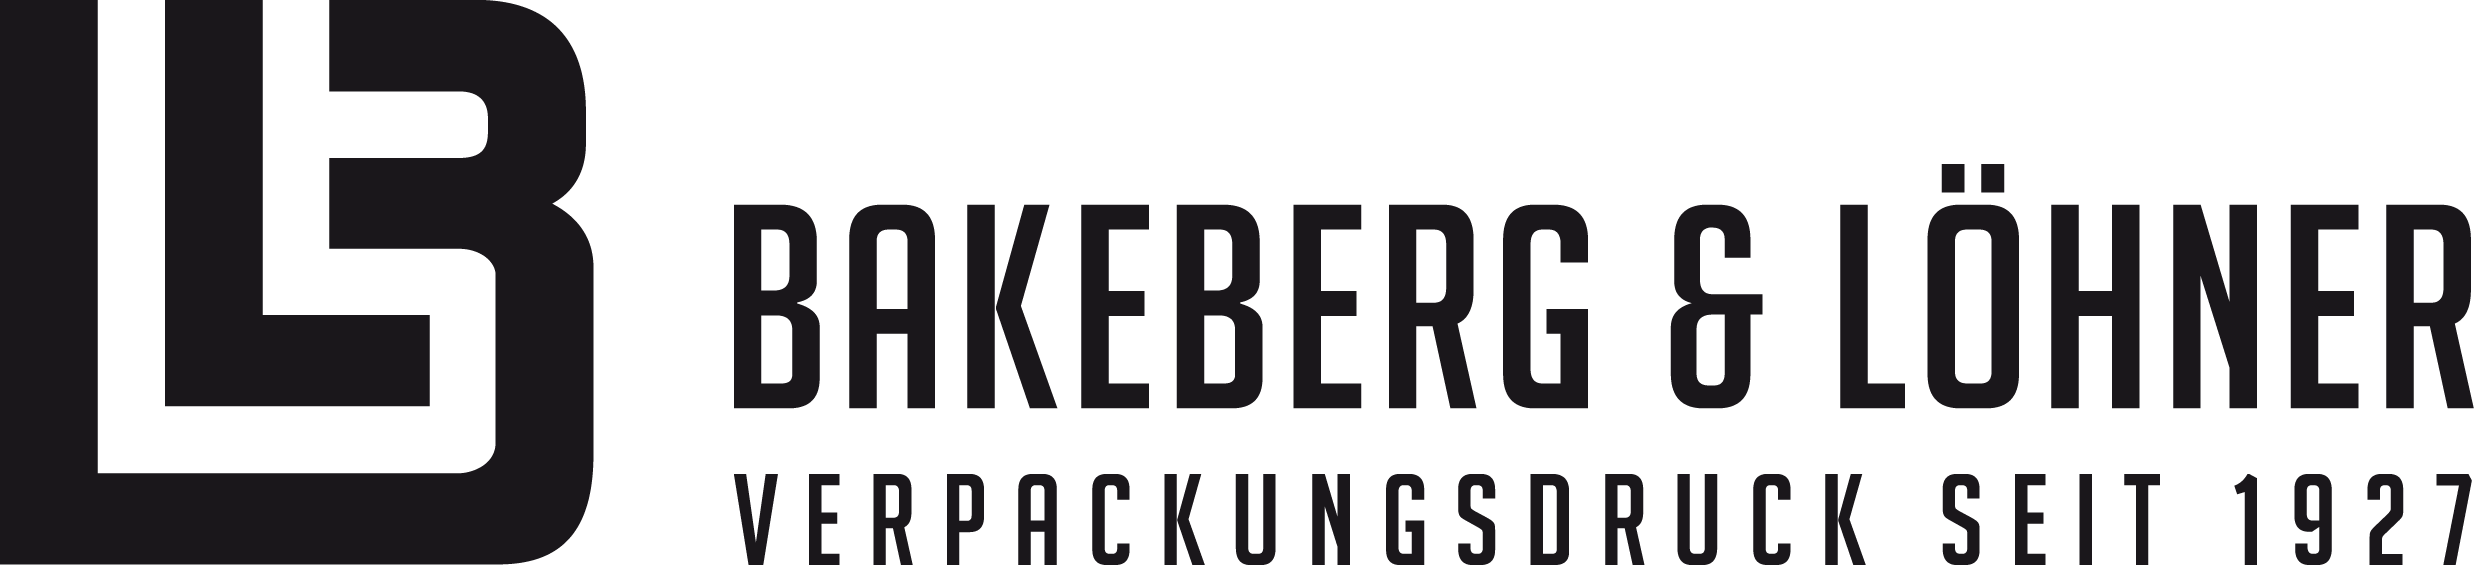 Bakeberg & Löhner Druckerei Hildesheim